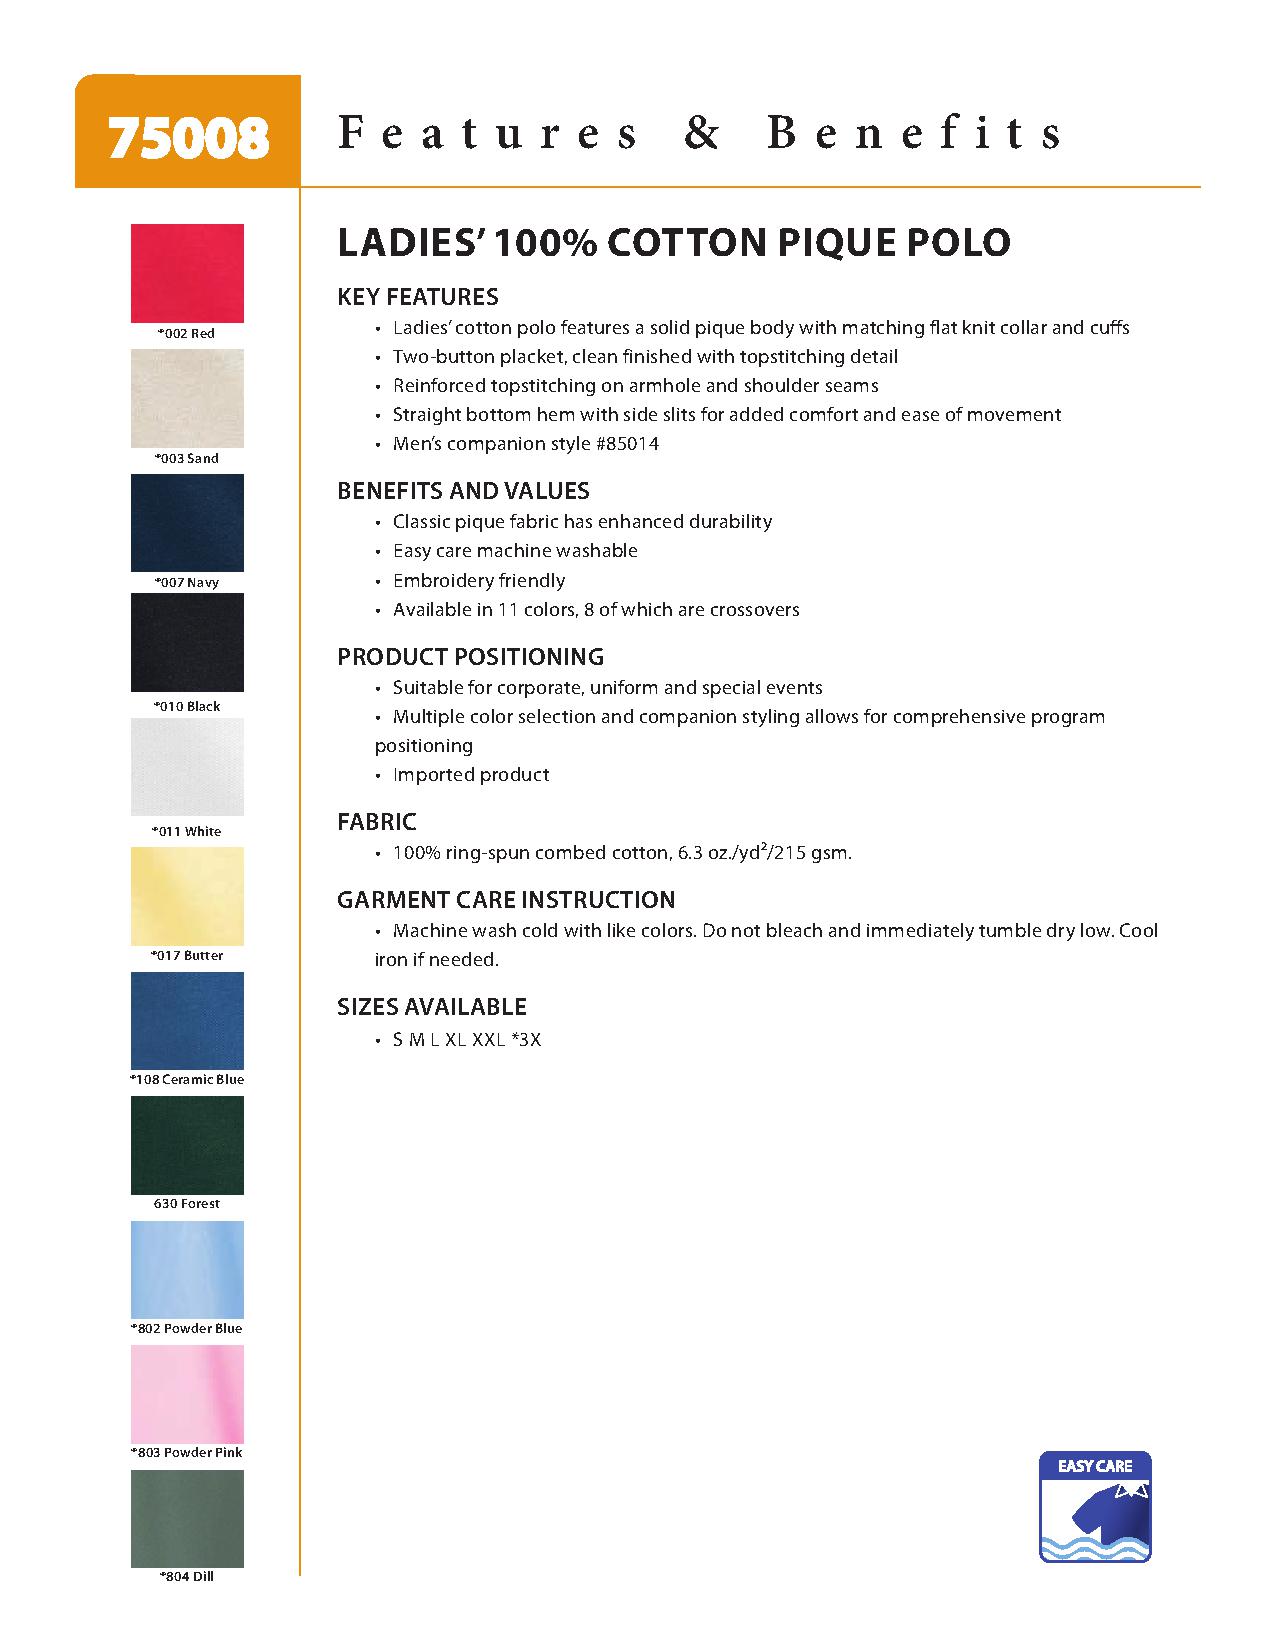 Ash City Pique 75008 - Ladies' 100% Cotton Pique Polo